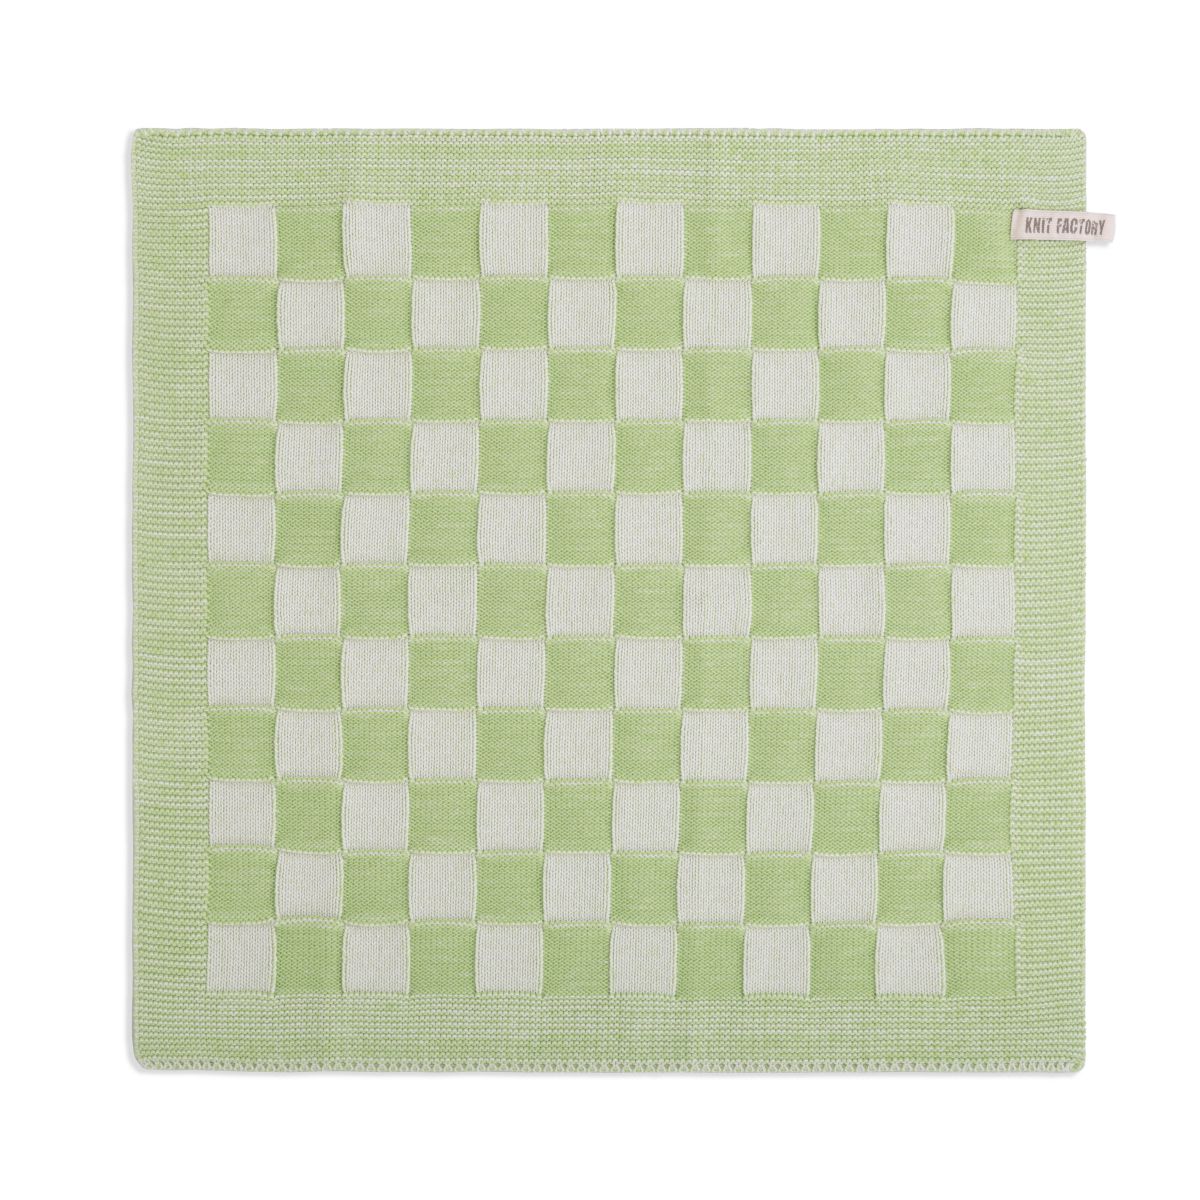 Knit Factory Gebreide Keukendoek - Keukenhanddoek Block - Geblokt motief - Handdoek - Vaatdoek - Keuken doek - Ecru/Spring Green - Traditionele look - 50x50 cm